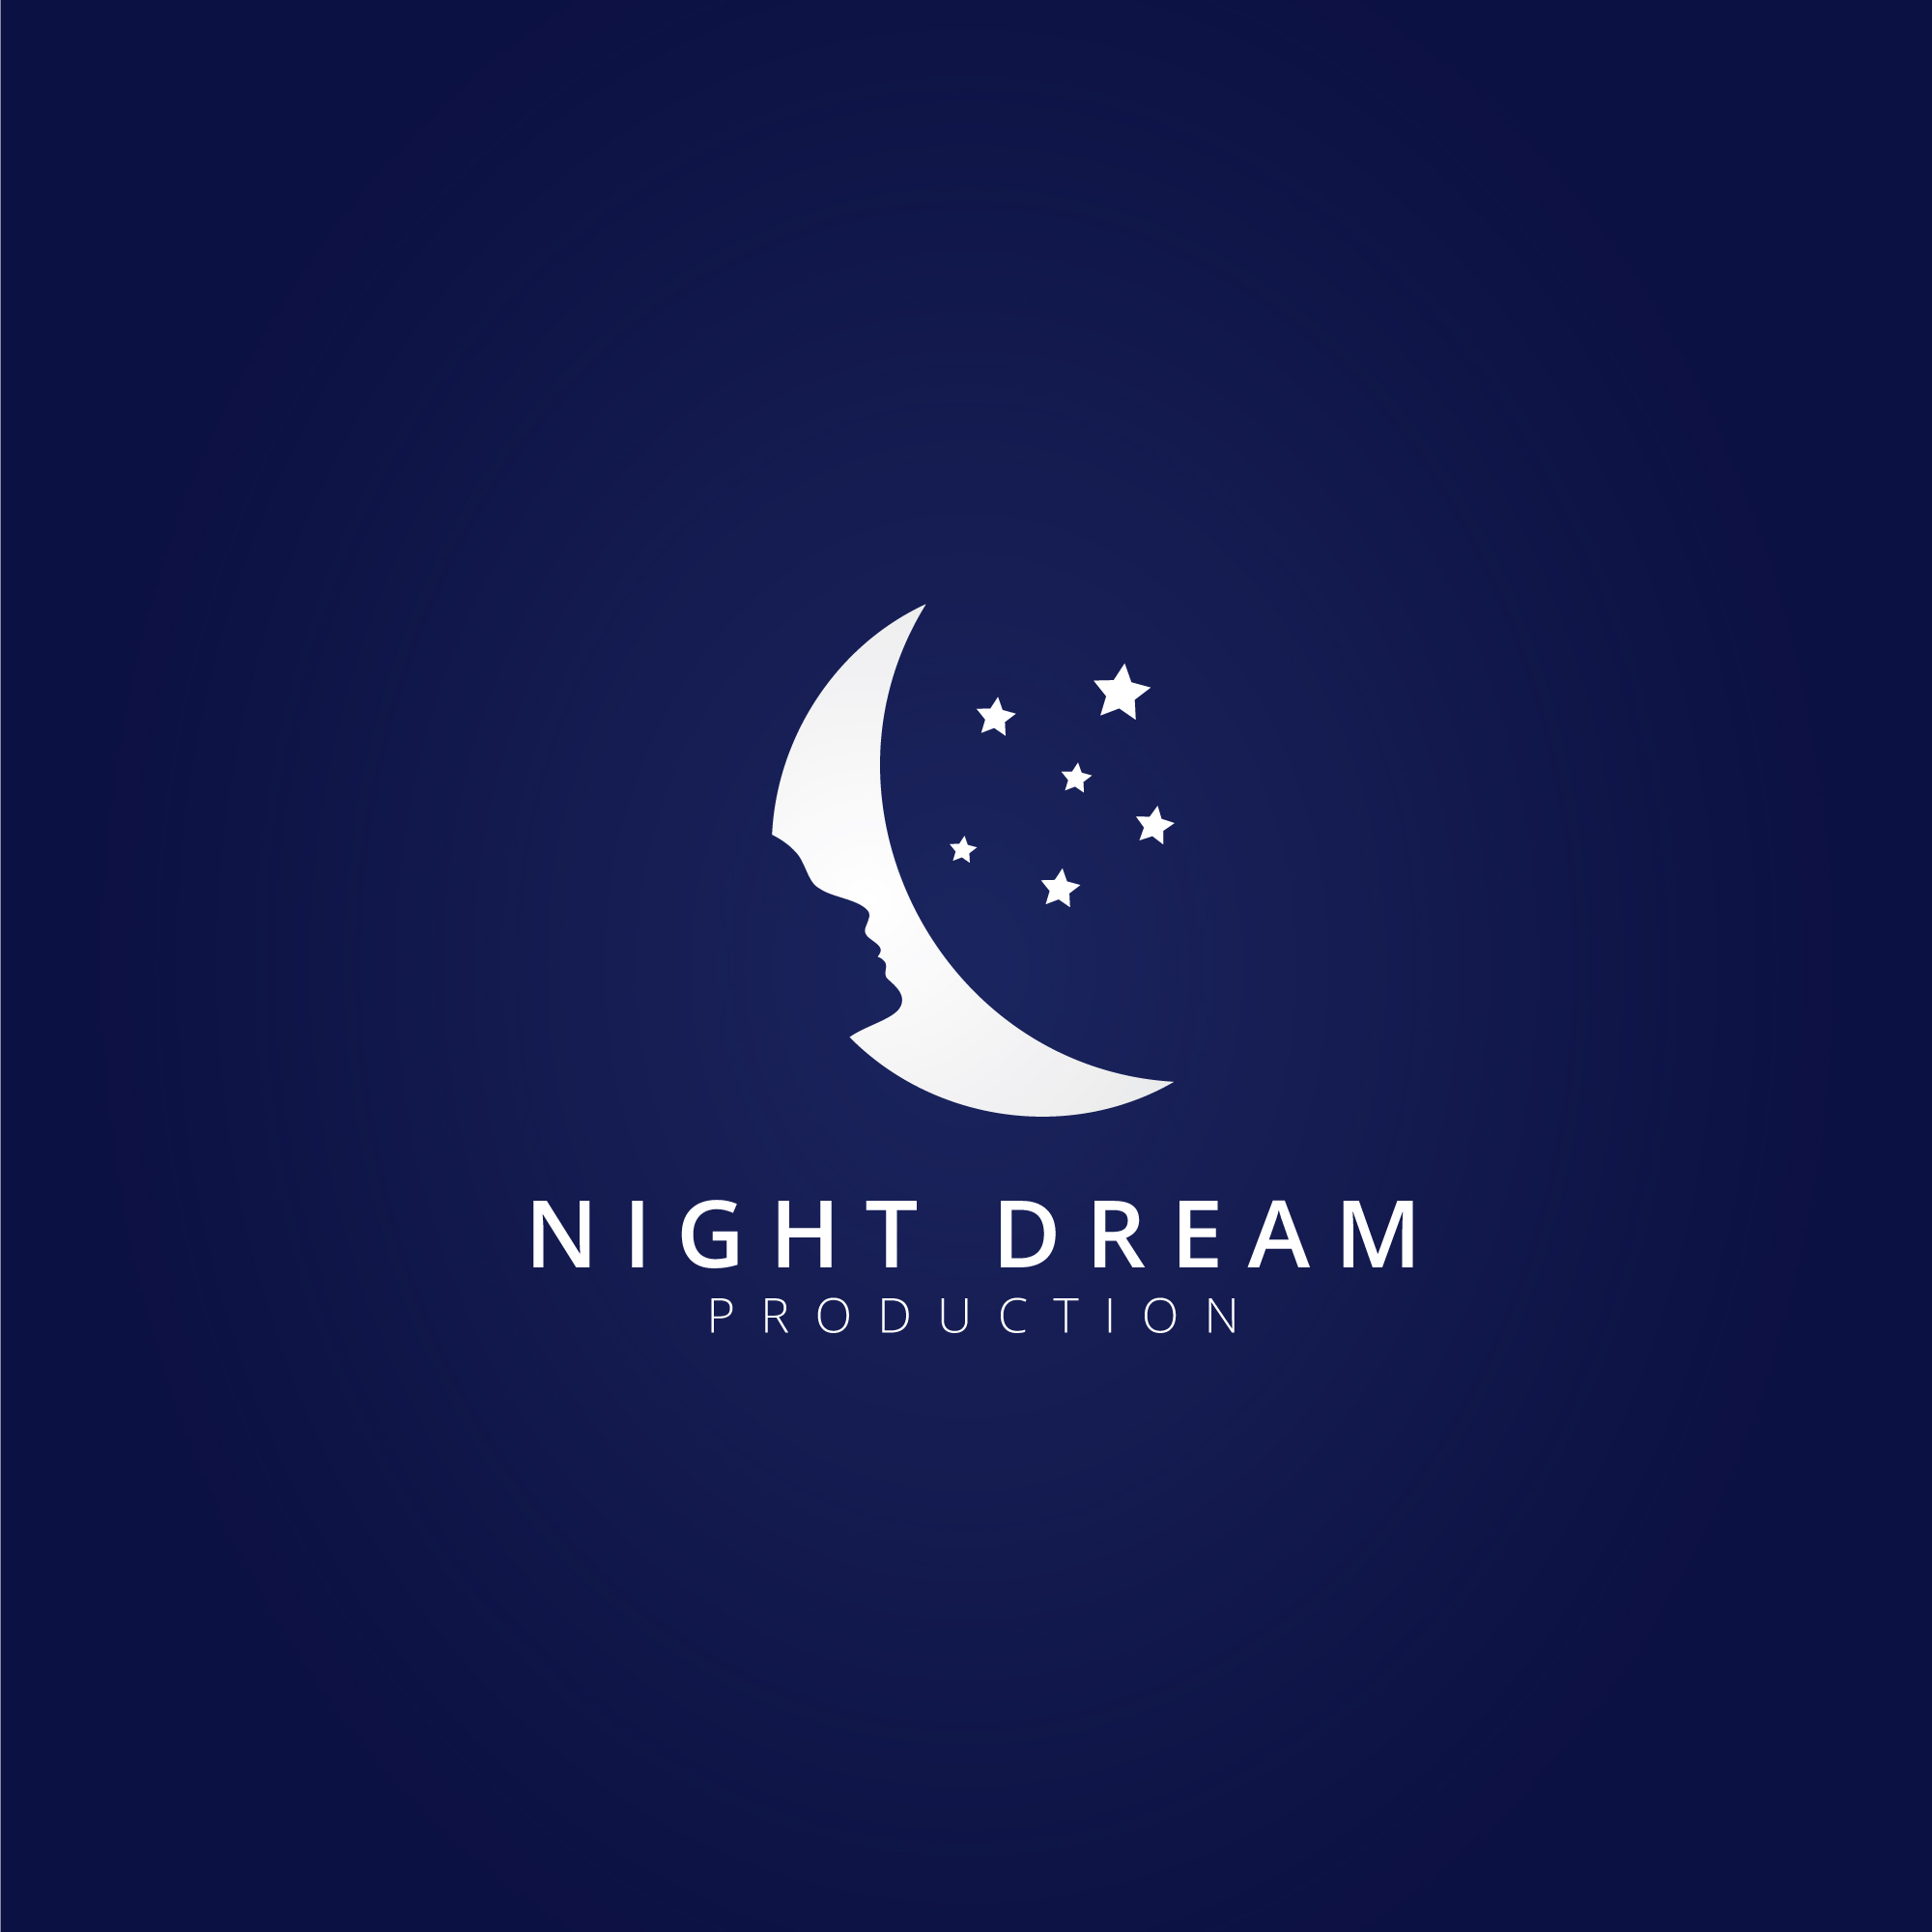 Night Dream Moon Logo Template - Download Free Vectors, Clipart Graphics & Vector Art